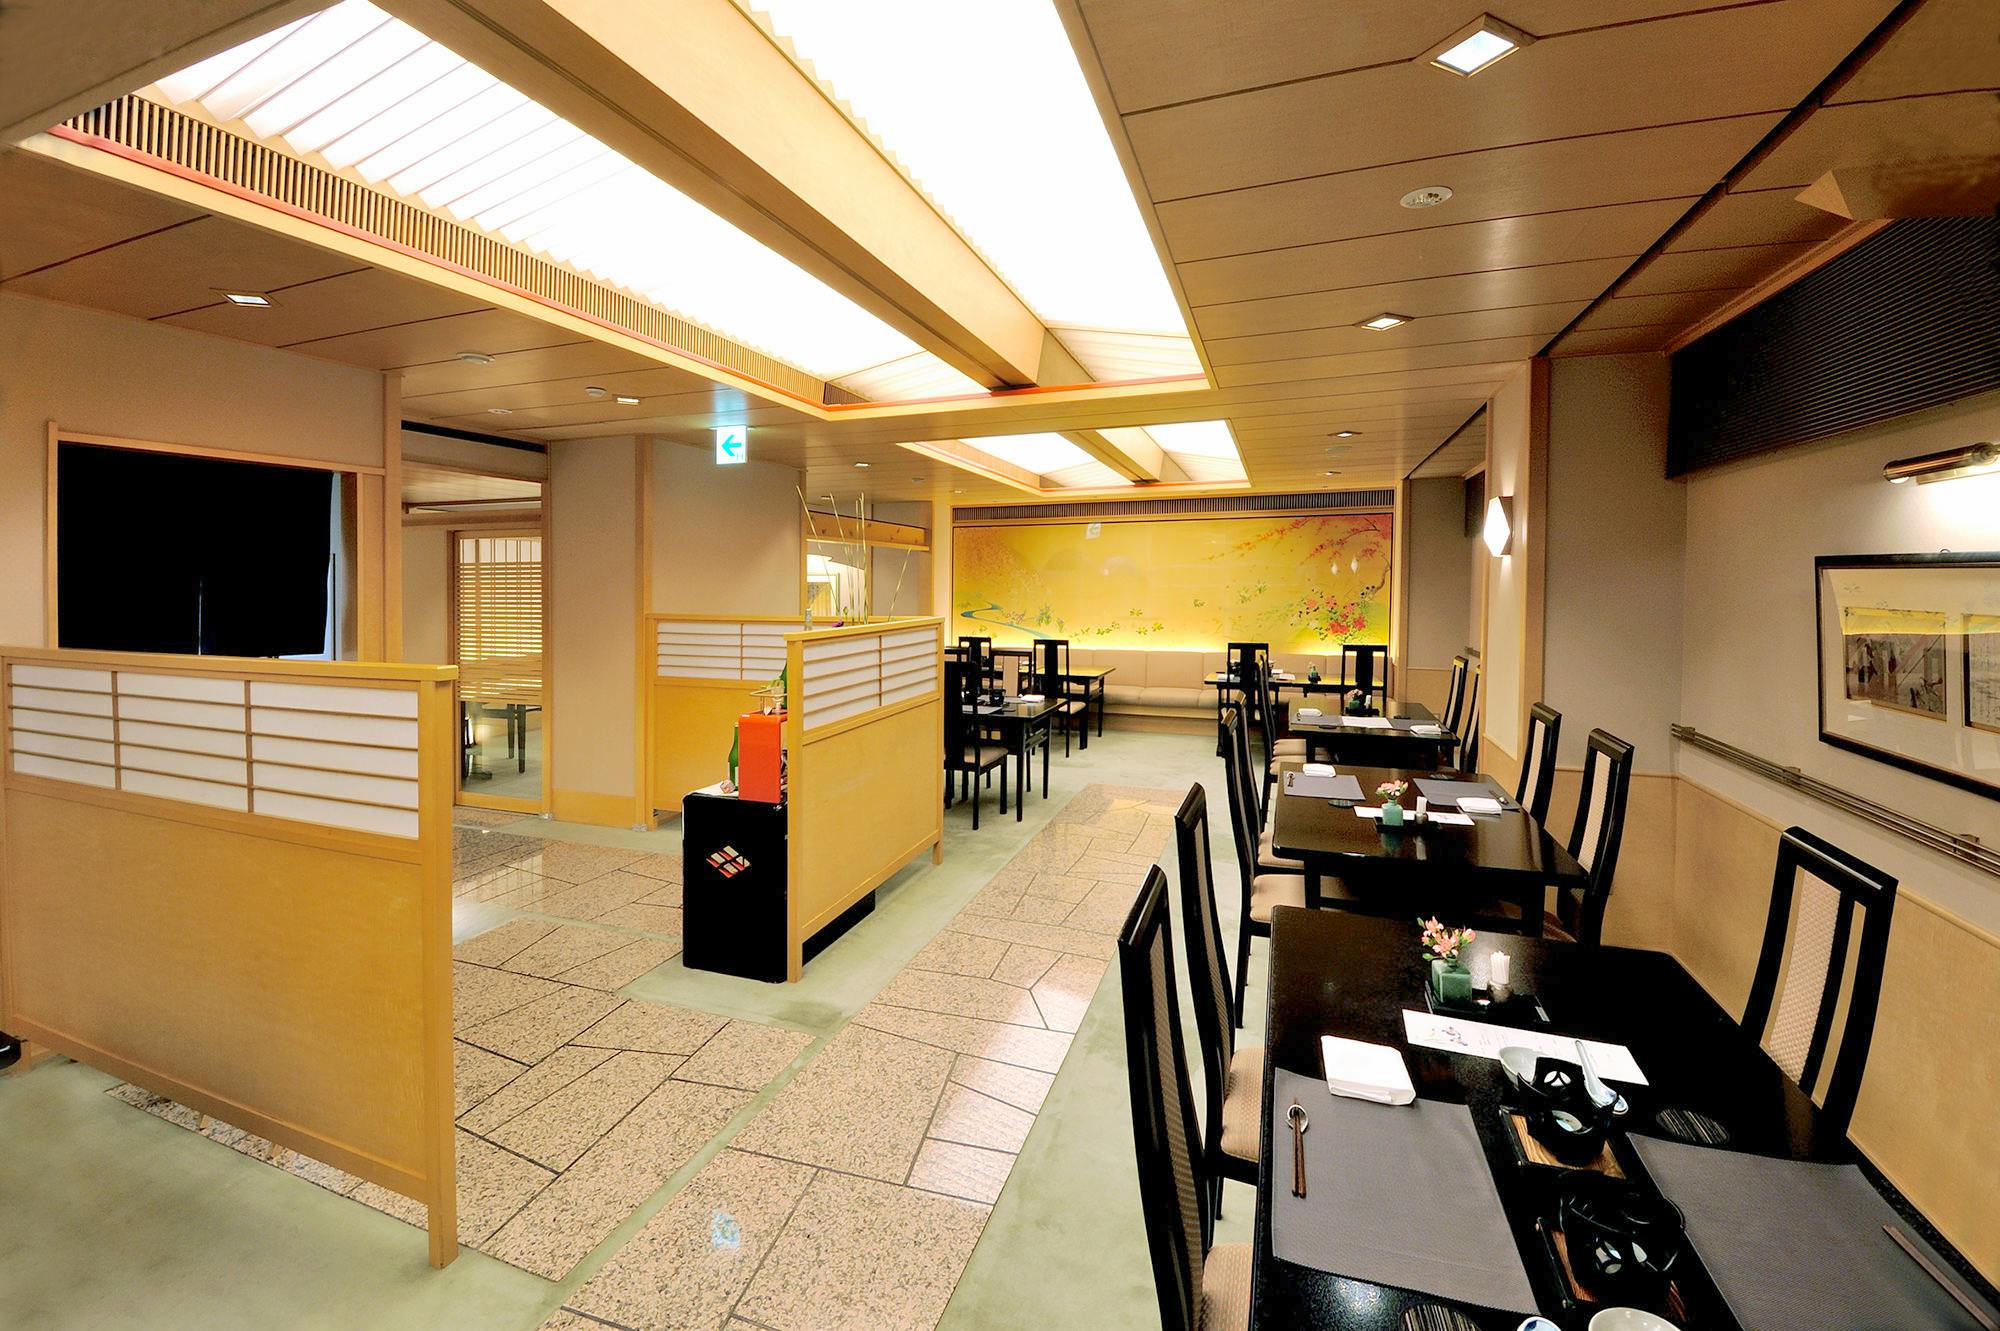 嵐山の絶品ランチ18選 コスパ抜群のおしゃれなレストランをご紹介 Okaimonoモール レストラン